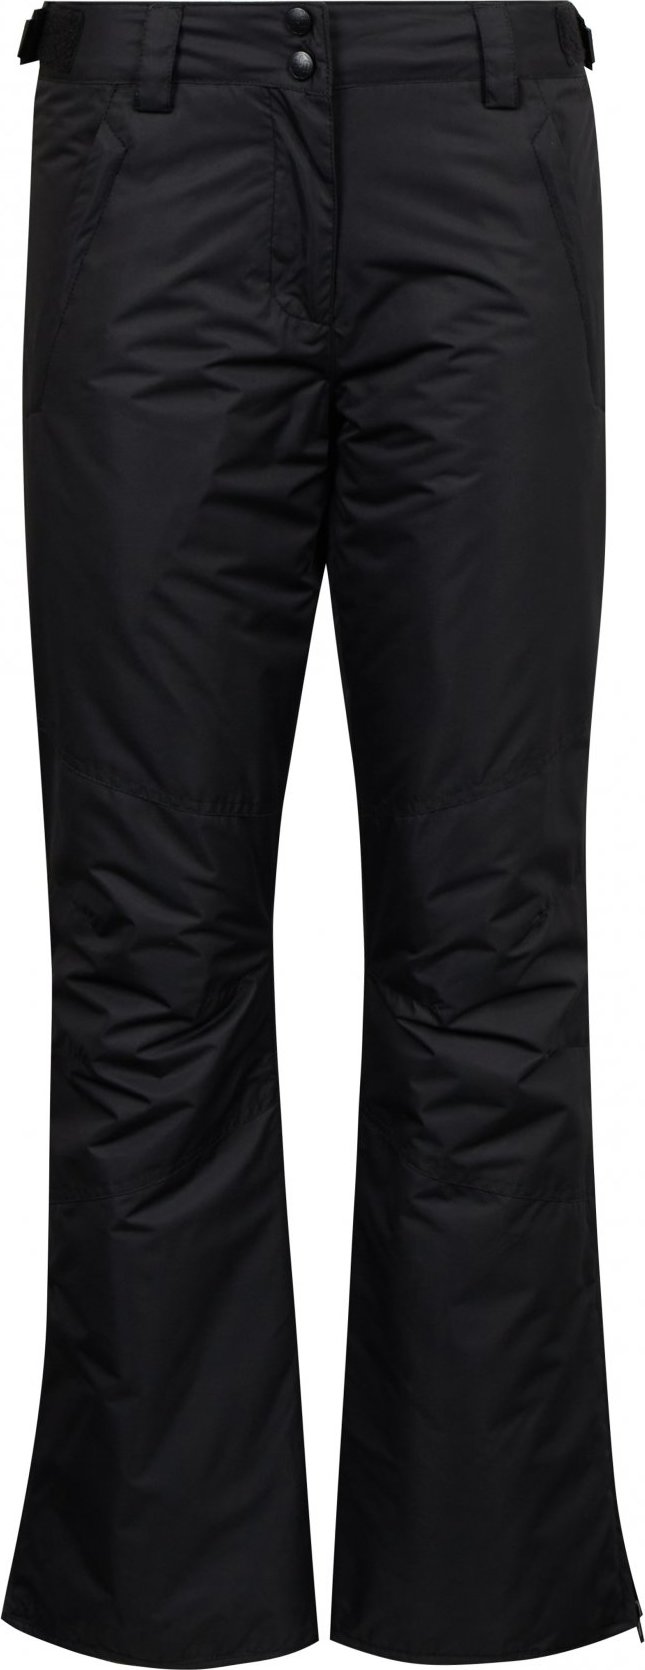 Dámské lyžařské kalhoty SAM 73 Indy černé Velikost: XXL